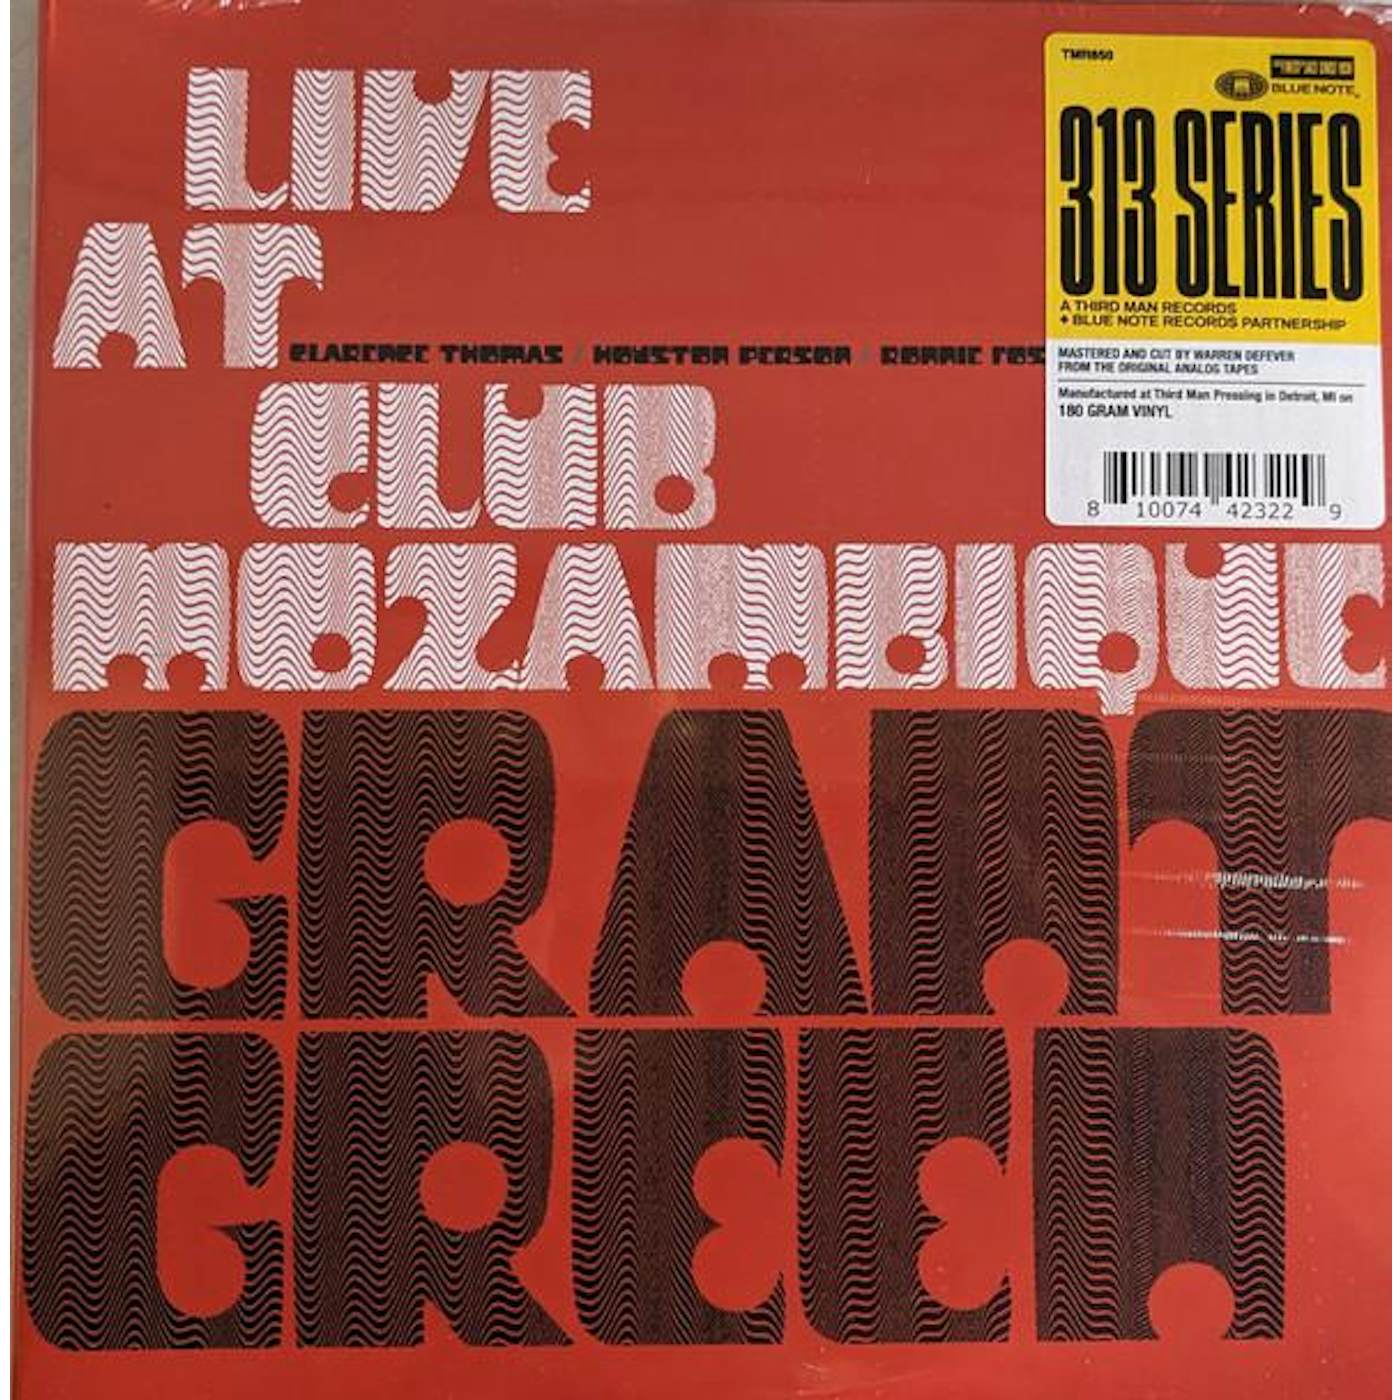 Grant Green LIVE AT CLUB MOZAMBIQUE (2LP/180G) Vinyl Record